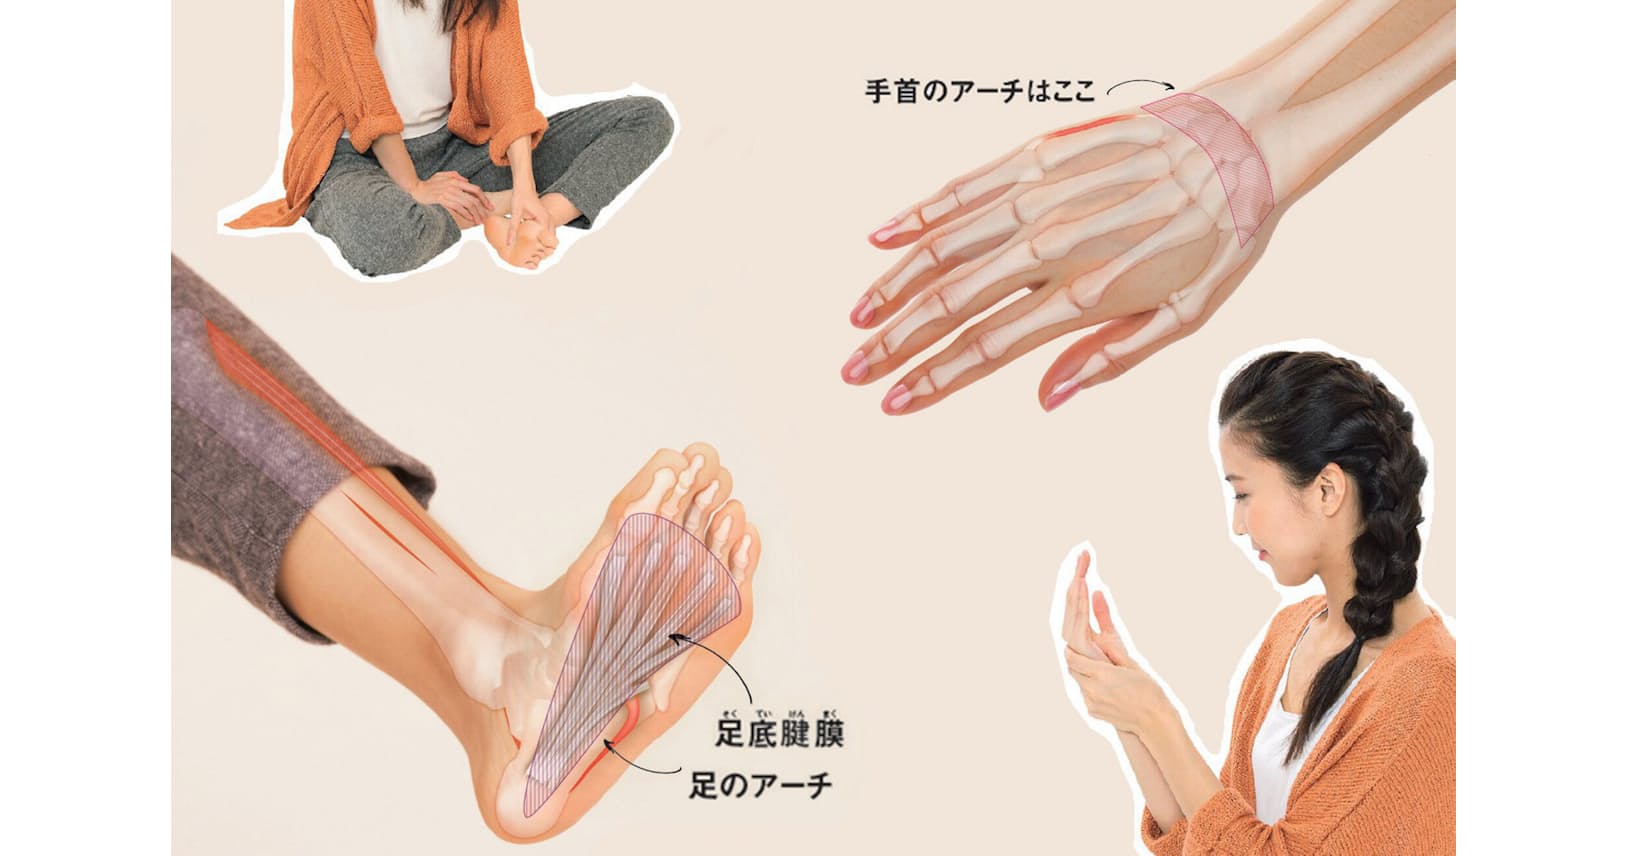 30秒で代謝がアップ 朝の手のひらもみ 夜の足裏もみ Nikkei Style